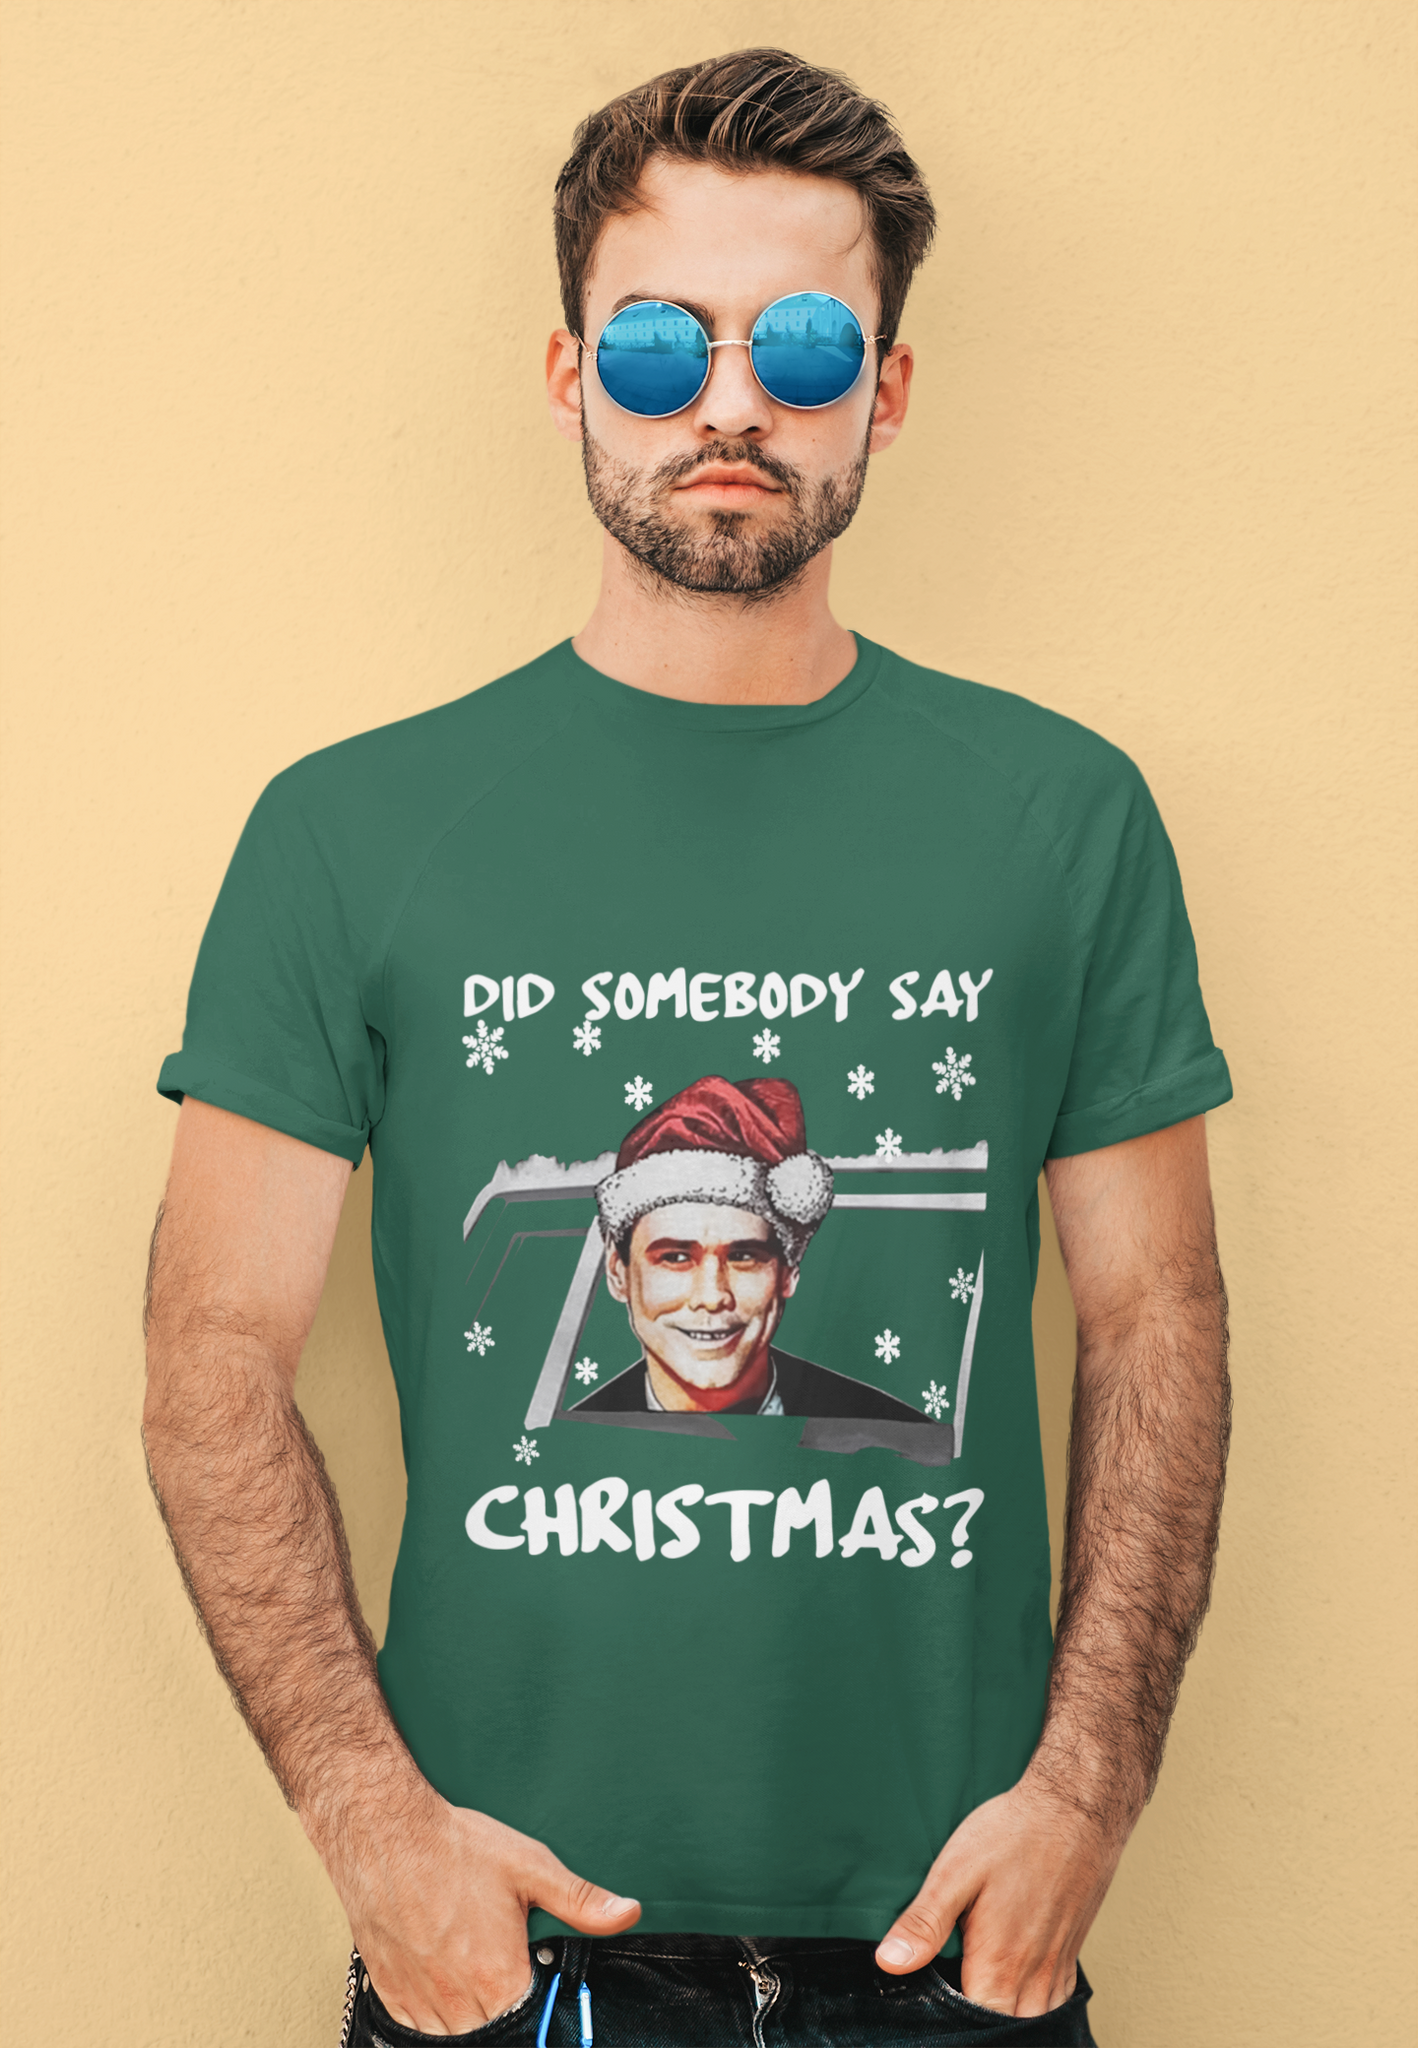 Dumb And Dumber T Shirt, Lloyd Christmas T Shirt, Did Somebody Say Christmas Tshirt, Christmas Gifts